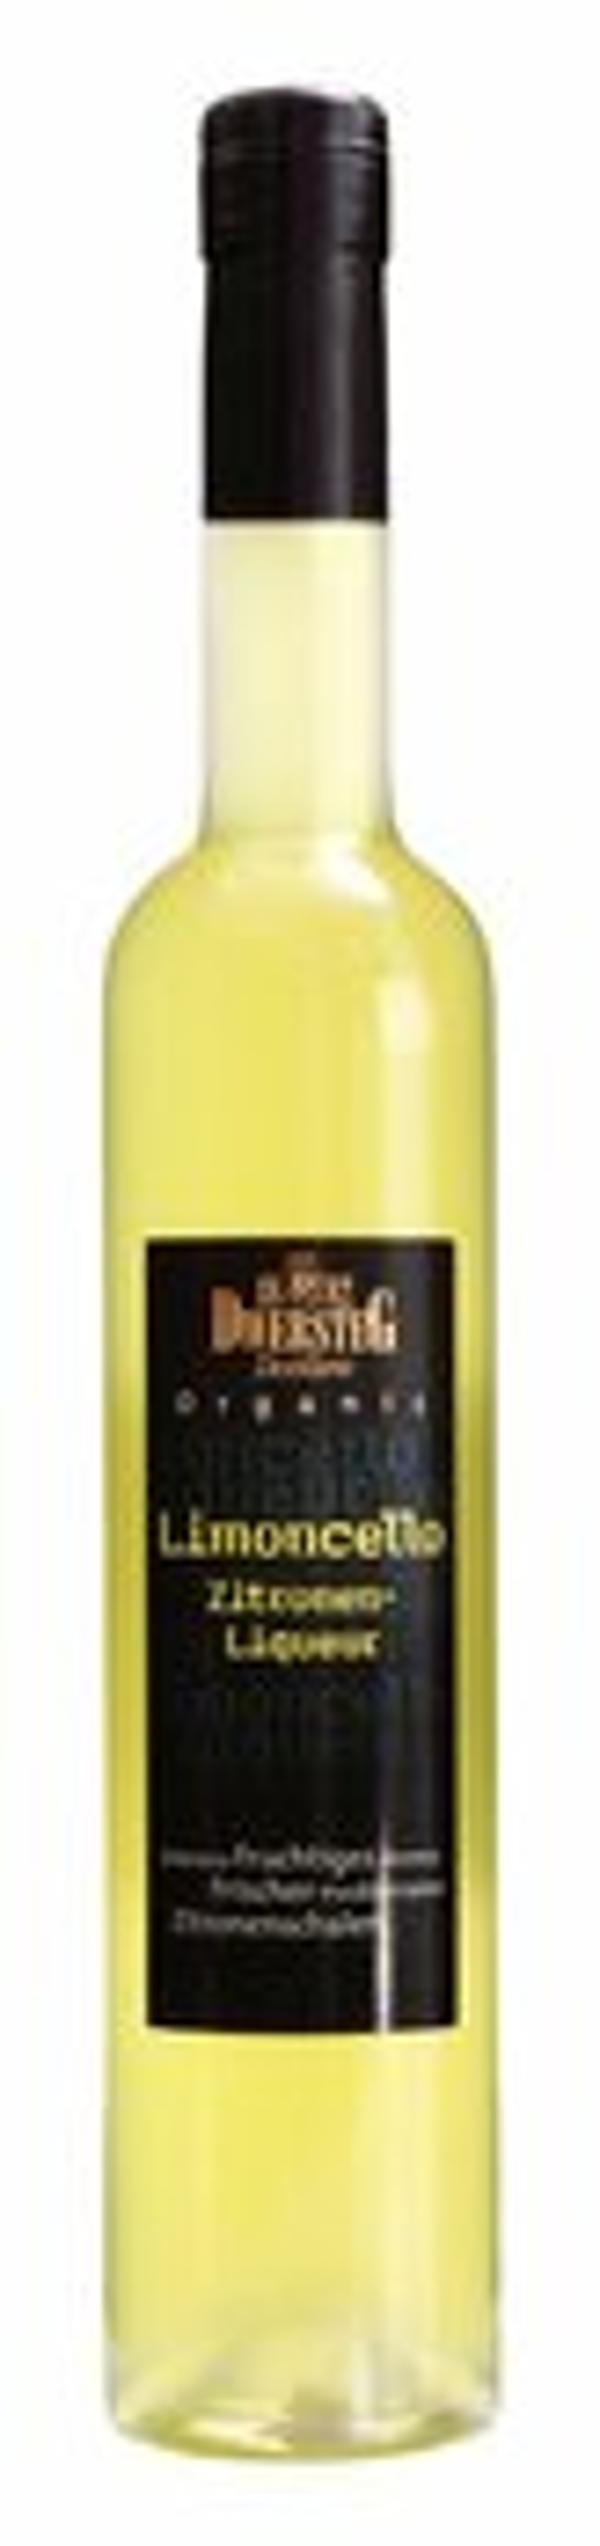 Produktfoto zu Limoncello Biostilla - Zitronenlikör